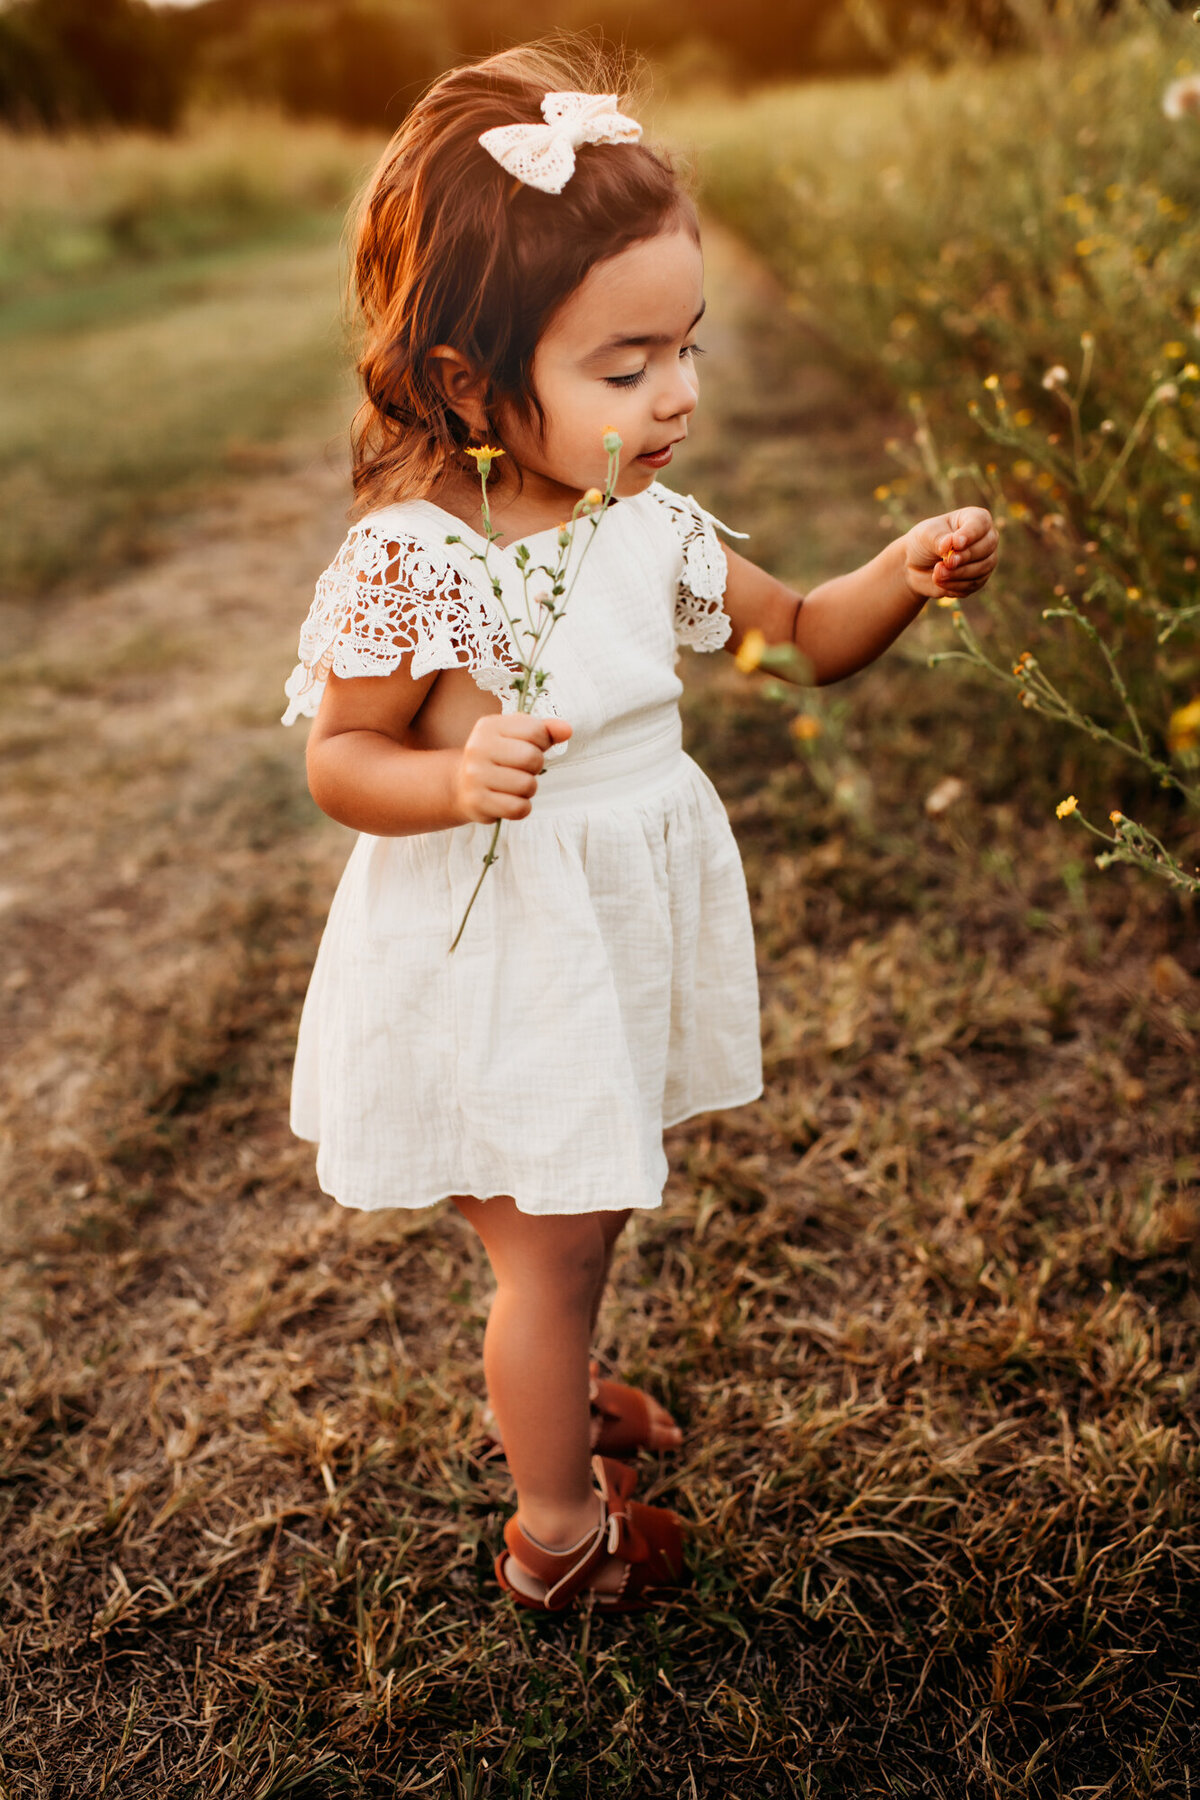 Family Photographer, Little girl picking flowers in the sunset.